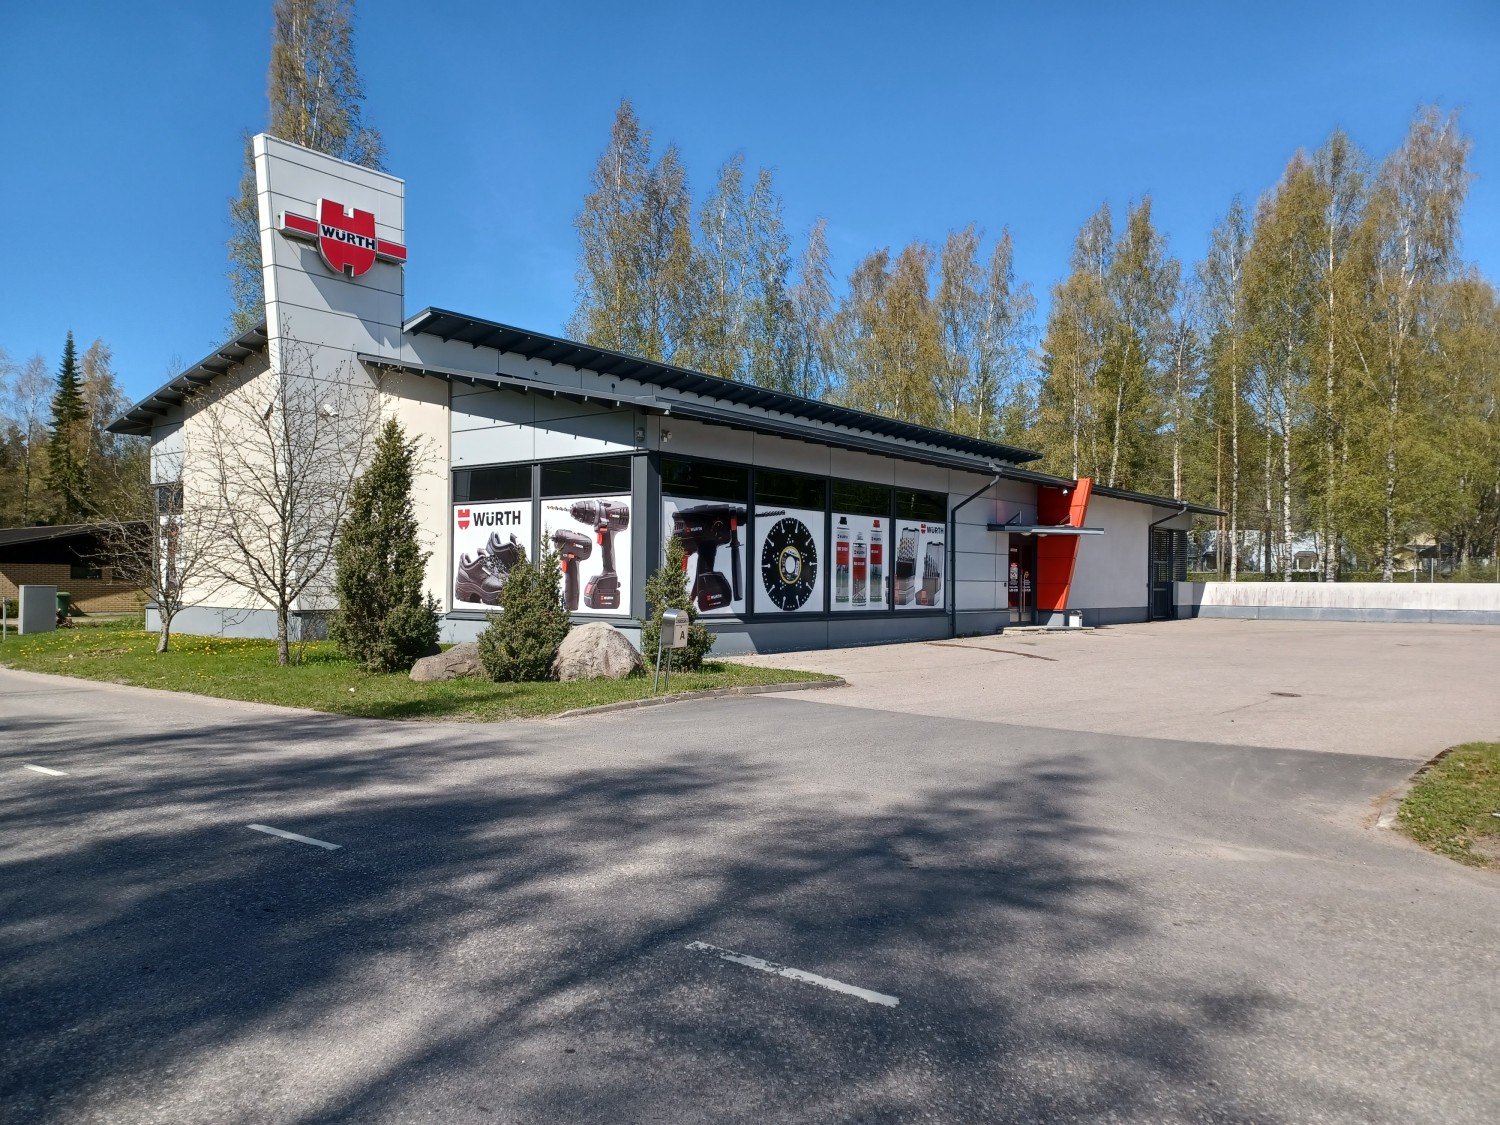 Center Hyvinkää, Koneenkatu